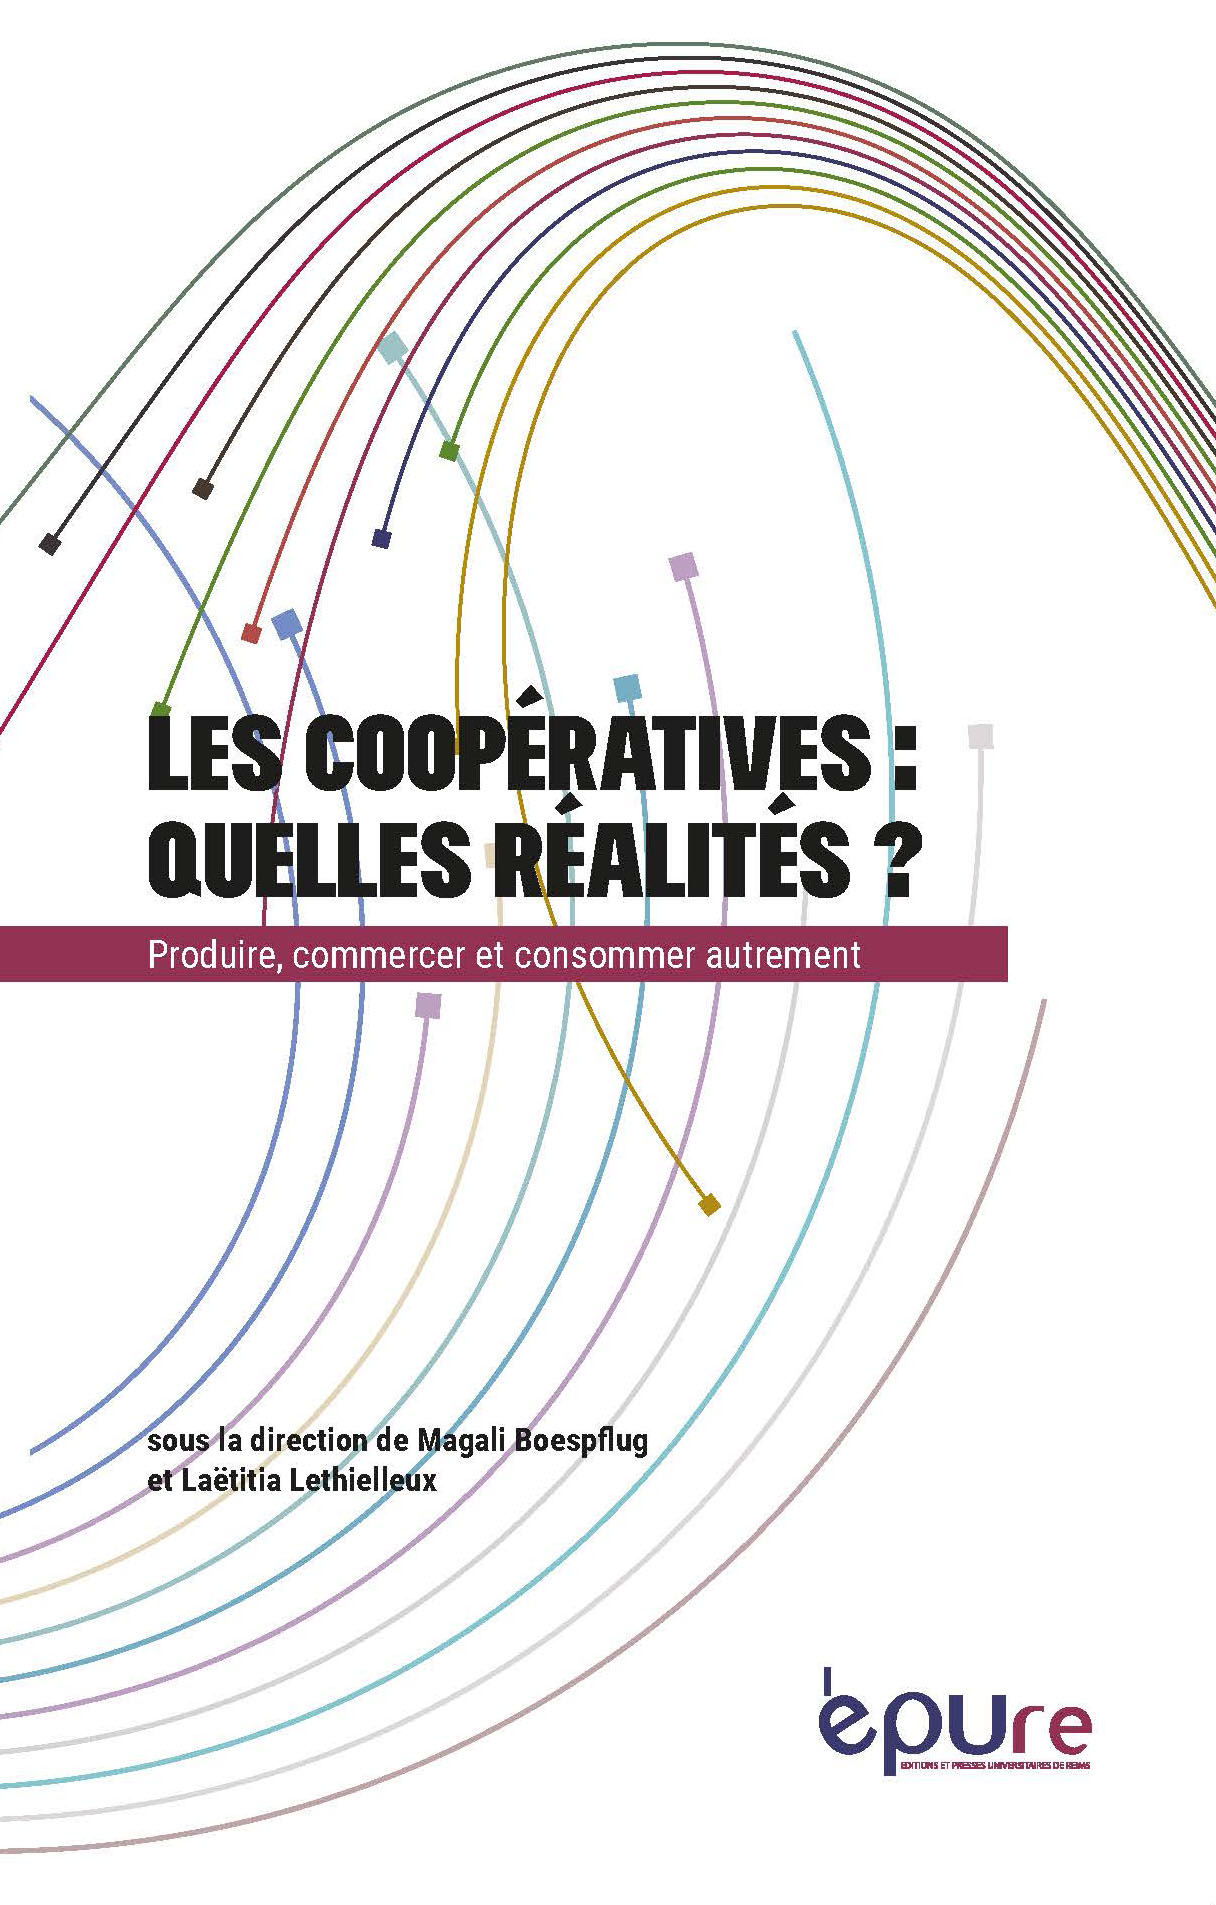 Les coopératives : quelles réalités ? Produire, commercer, consommer autrement